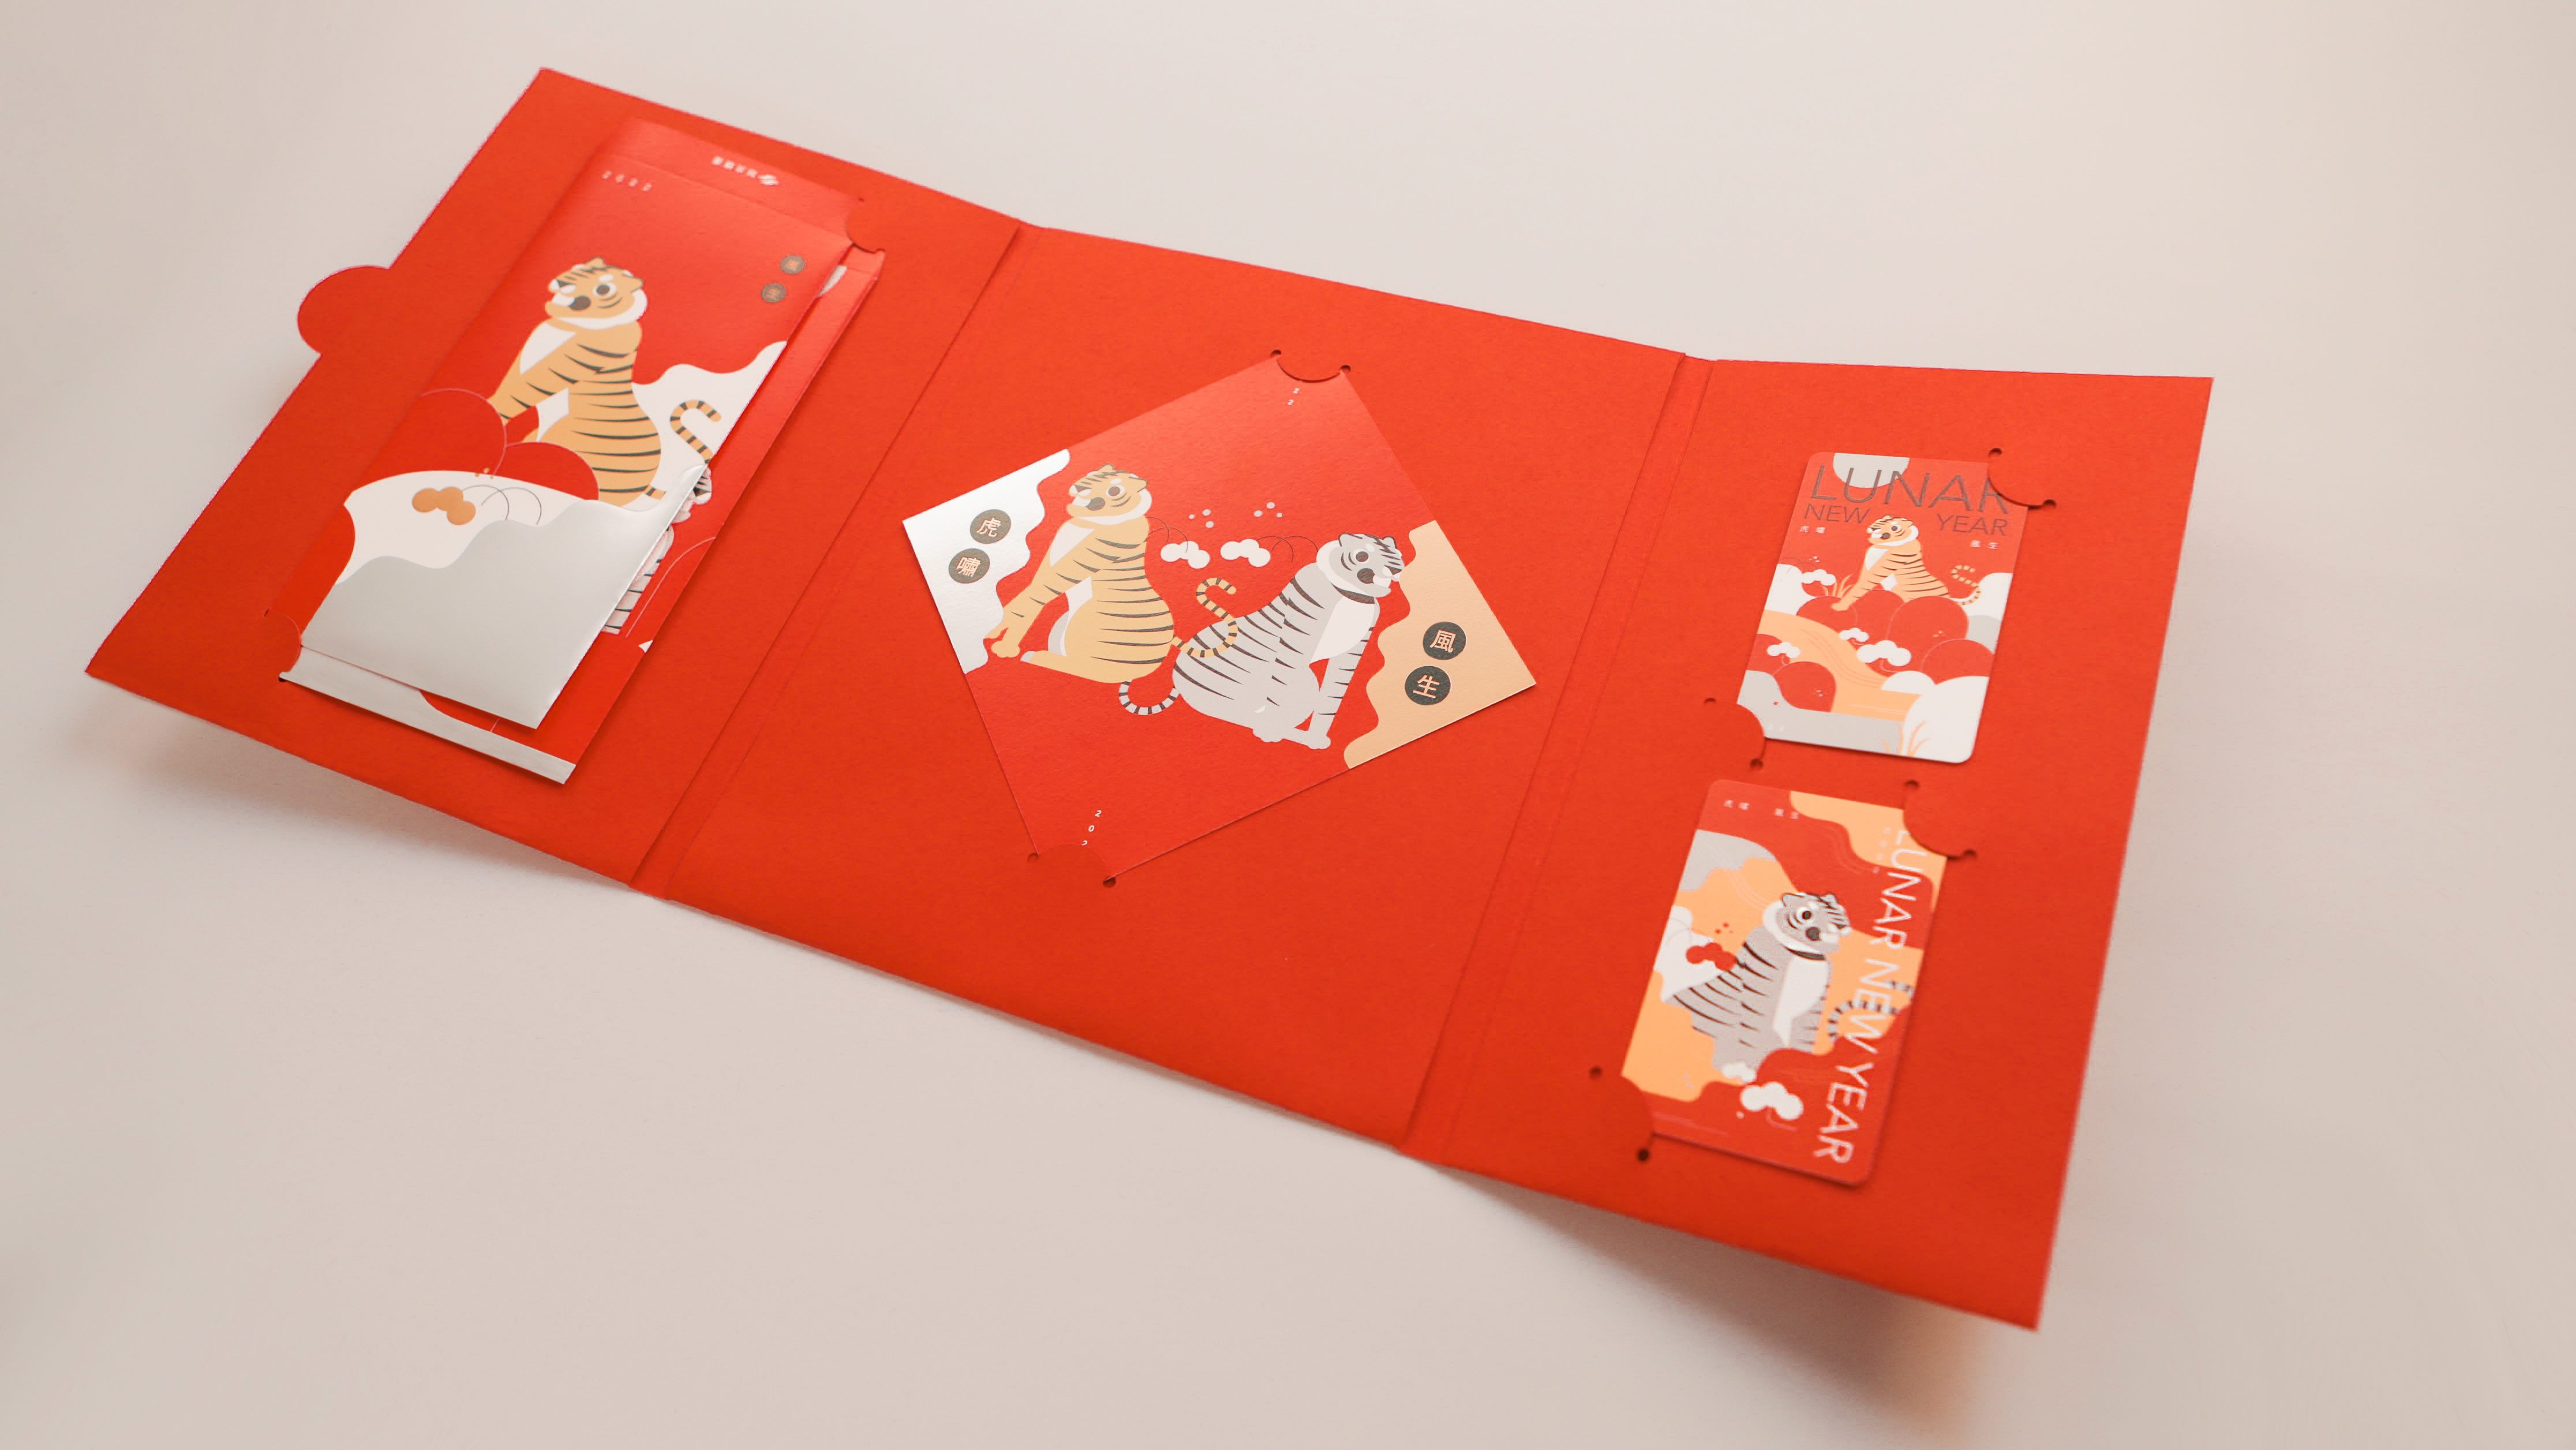 Mulai pukul 10:00 pada tanggal 15 Januari, sejumlah 600 set kartu akan dijual di MRT penjualan merchandise Stasiun Zhongshan dan Stasiun Zhongxiao Fuxing. Sumber: Diambil dari Pemerintah Kota Taipei